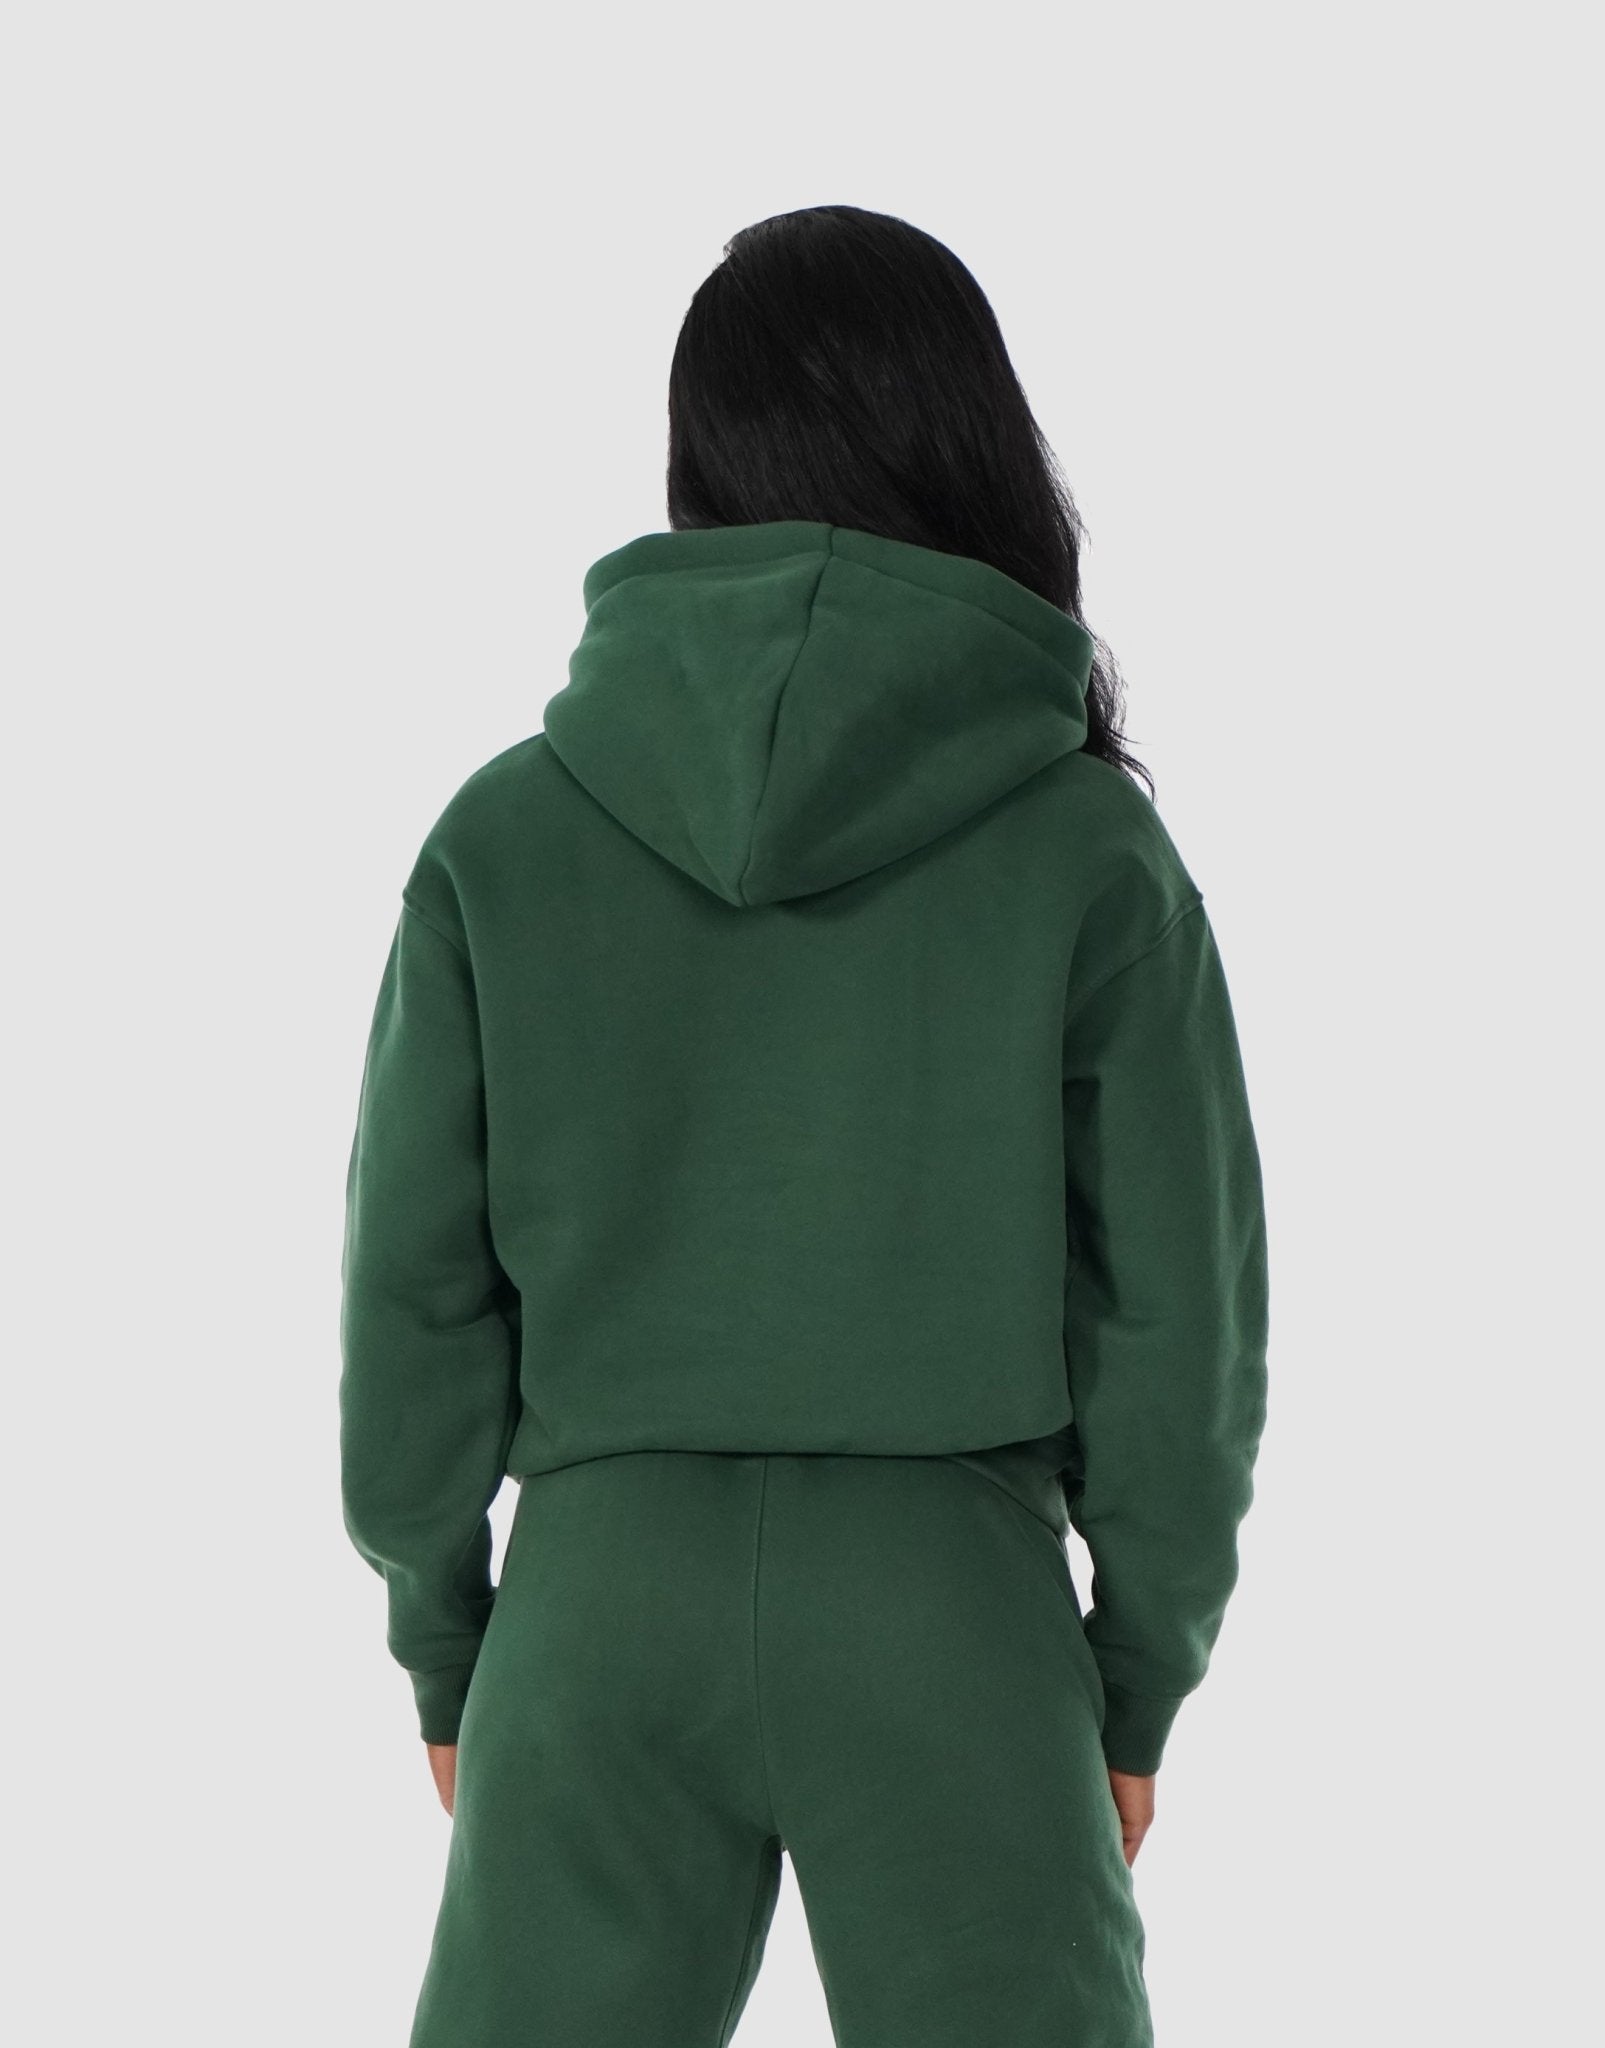 https://devoteewear.ca/cdn/shop/products/devoteewear-ultimate-comfort-hoodie-hoodie-599209.jpg?v=1697478557&width=1605